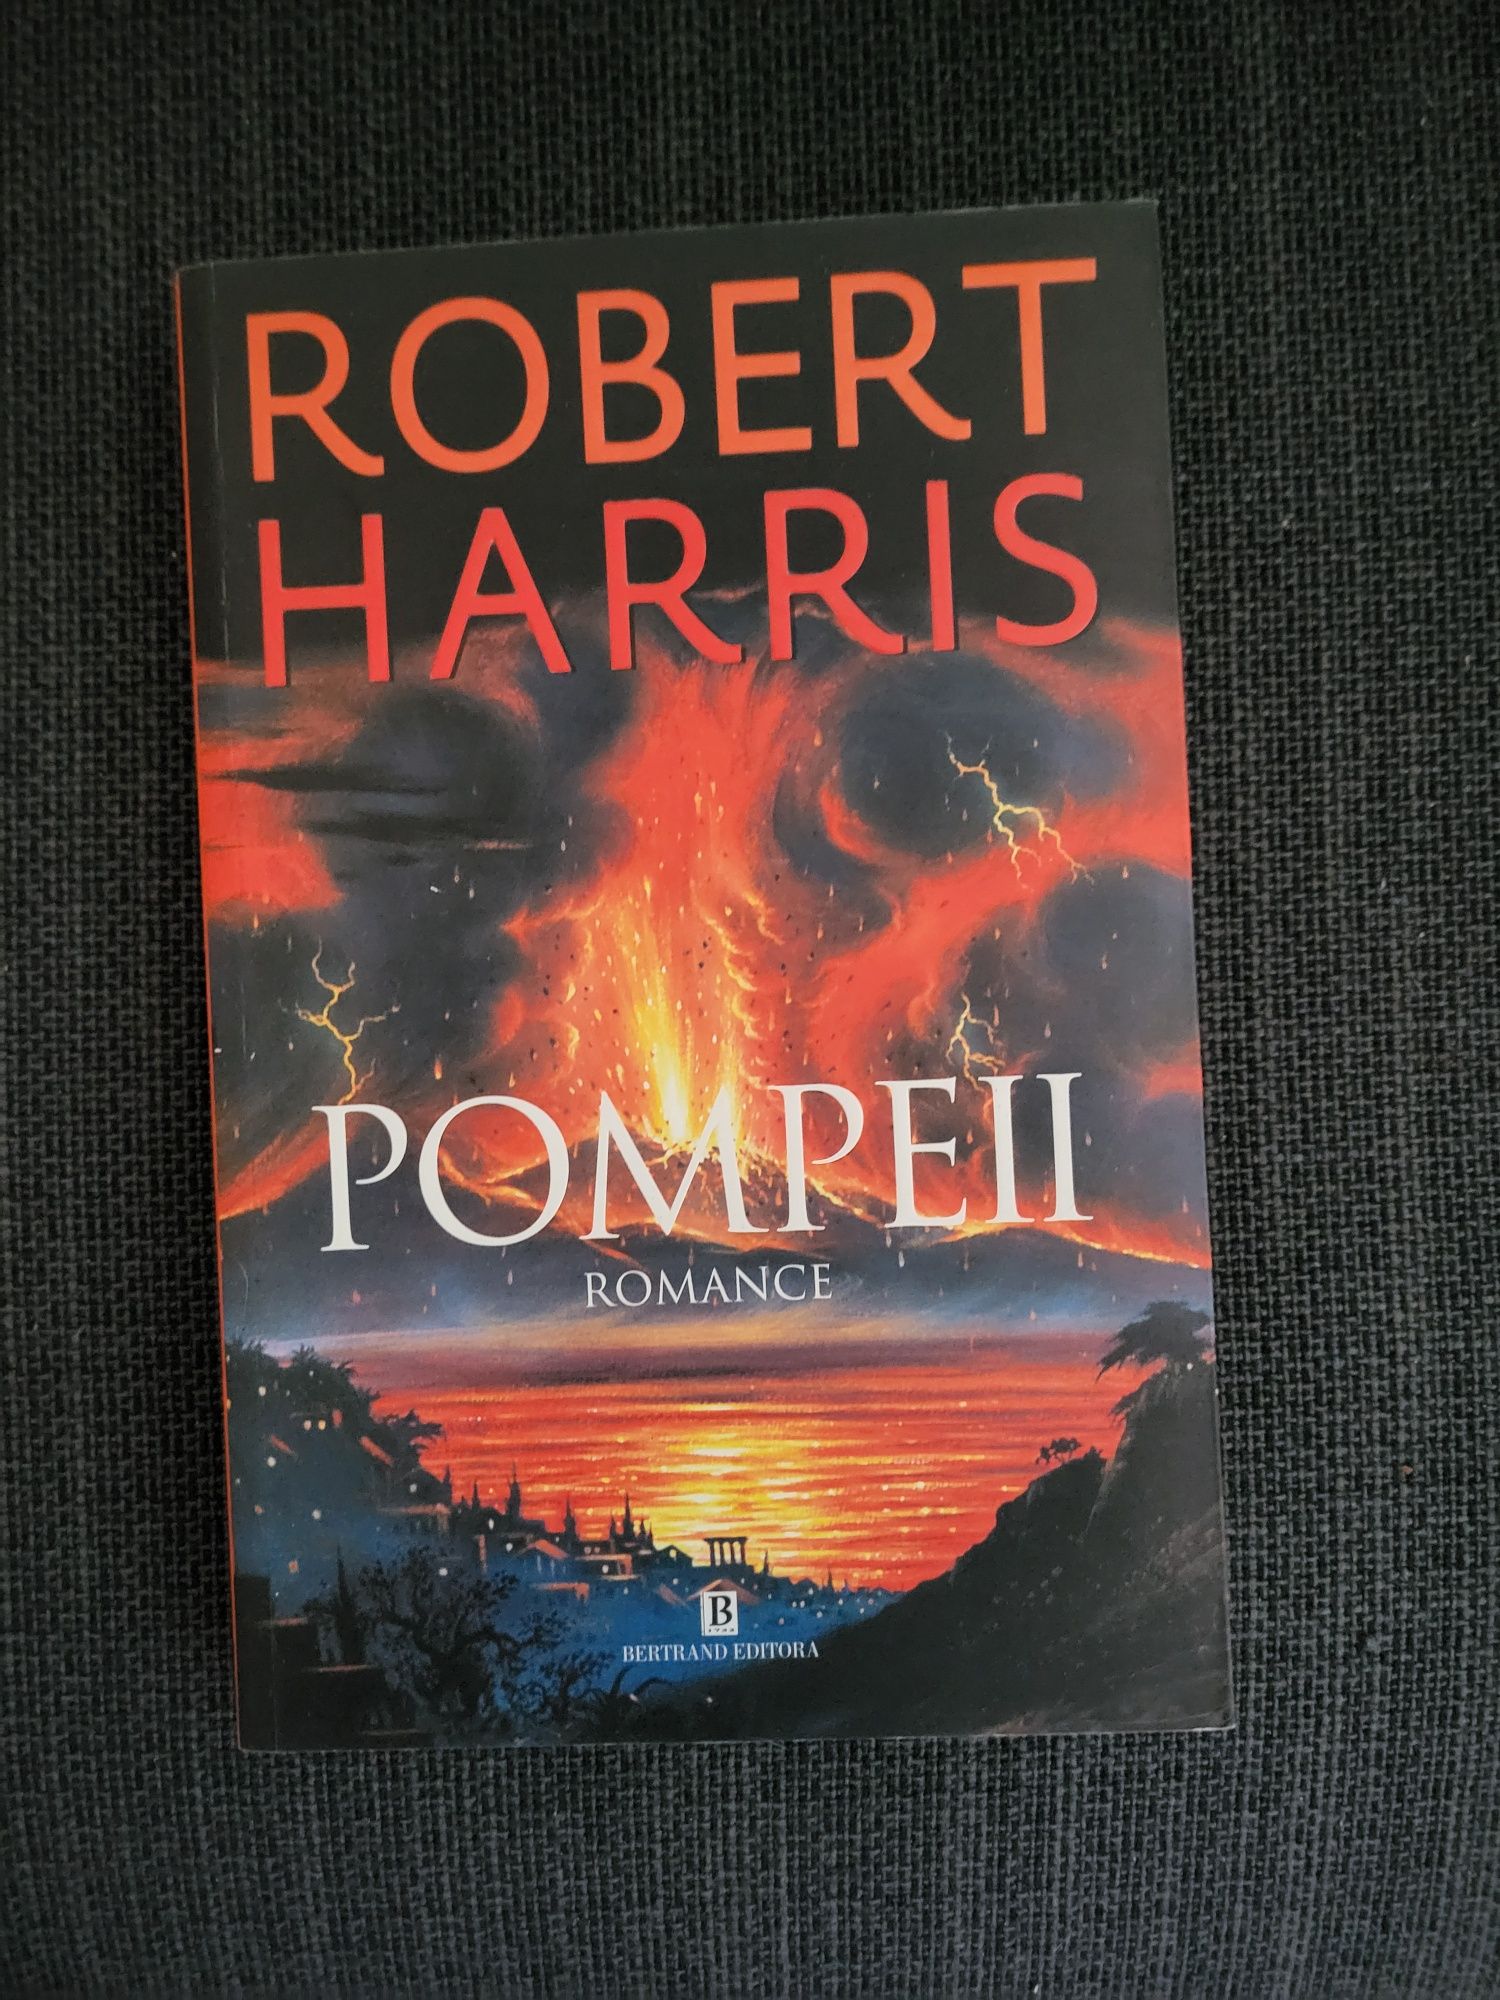 Livro "Pompeii" de Robert Harris